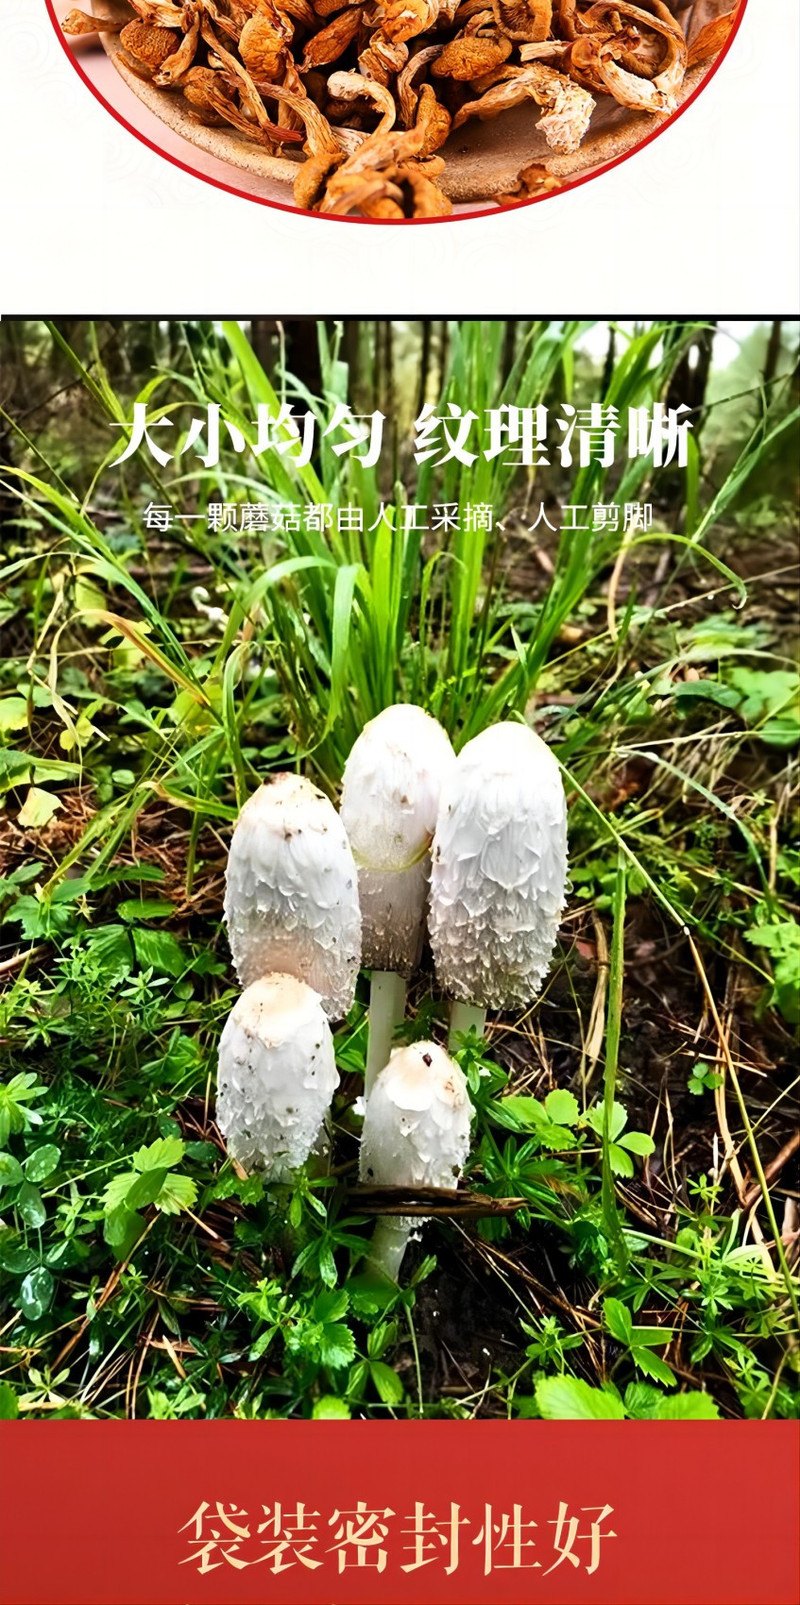 裕栢福 裕栢福坝上草原蘑菇 滑子菇100g *2